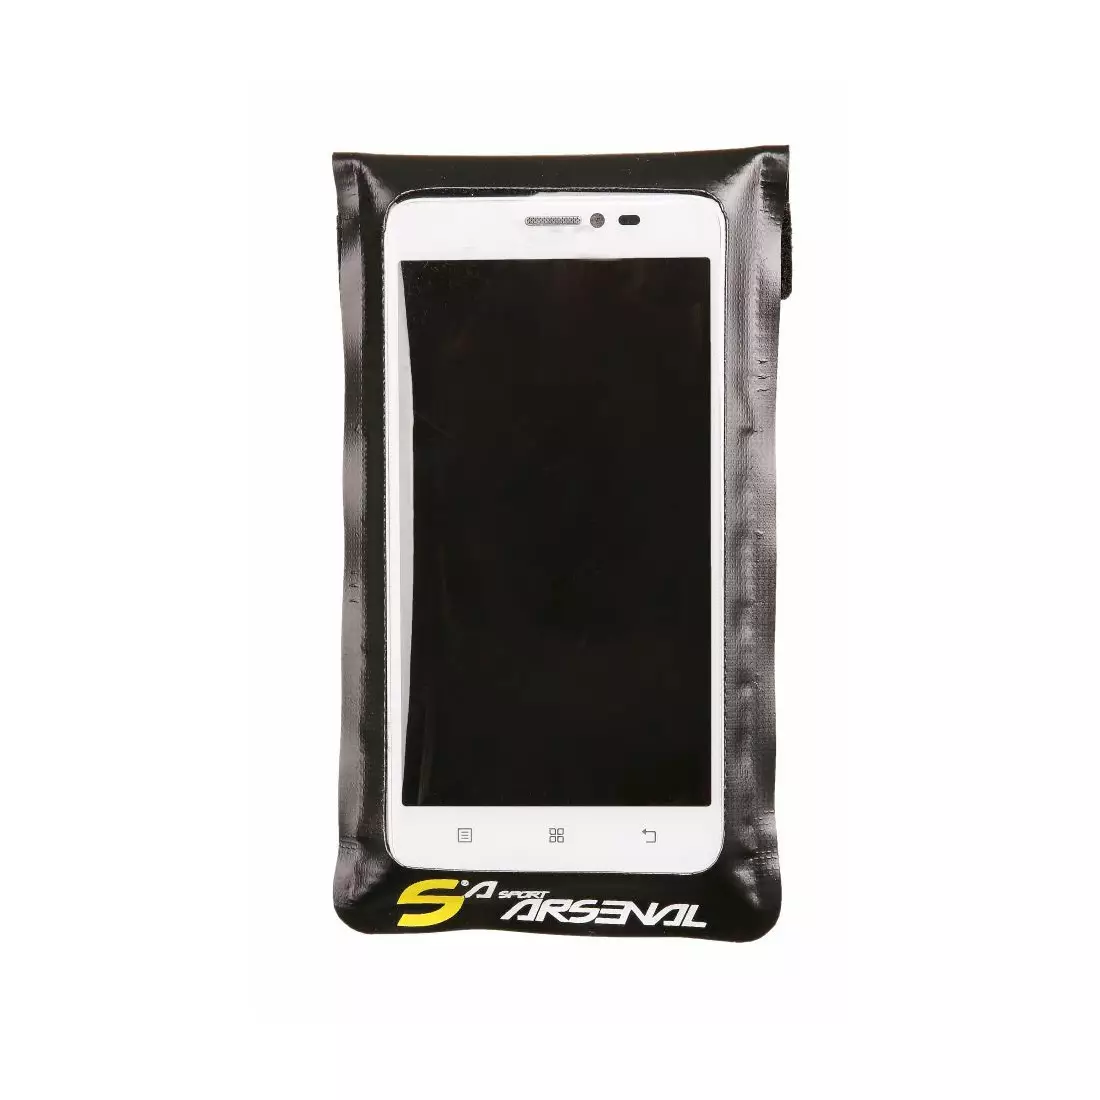 SPORT ARSENAL 531 Fahrradtasche für Smartphone, mittel 4,5'-5,5'